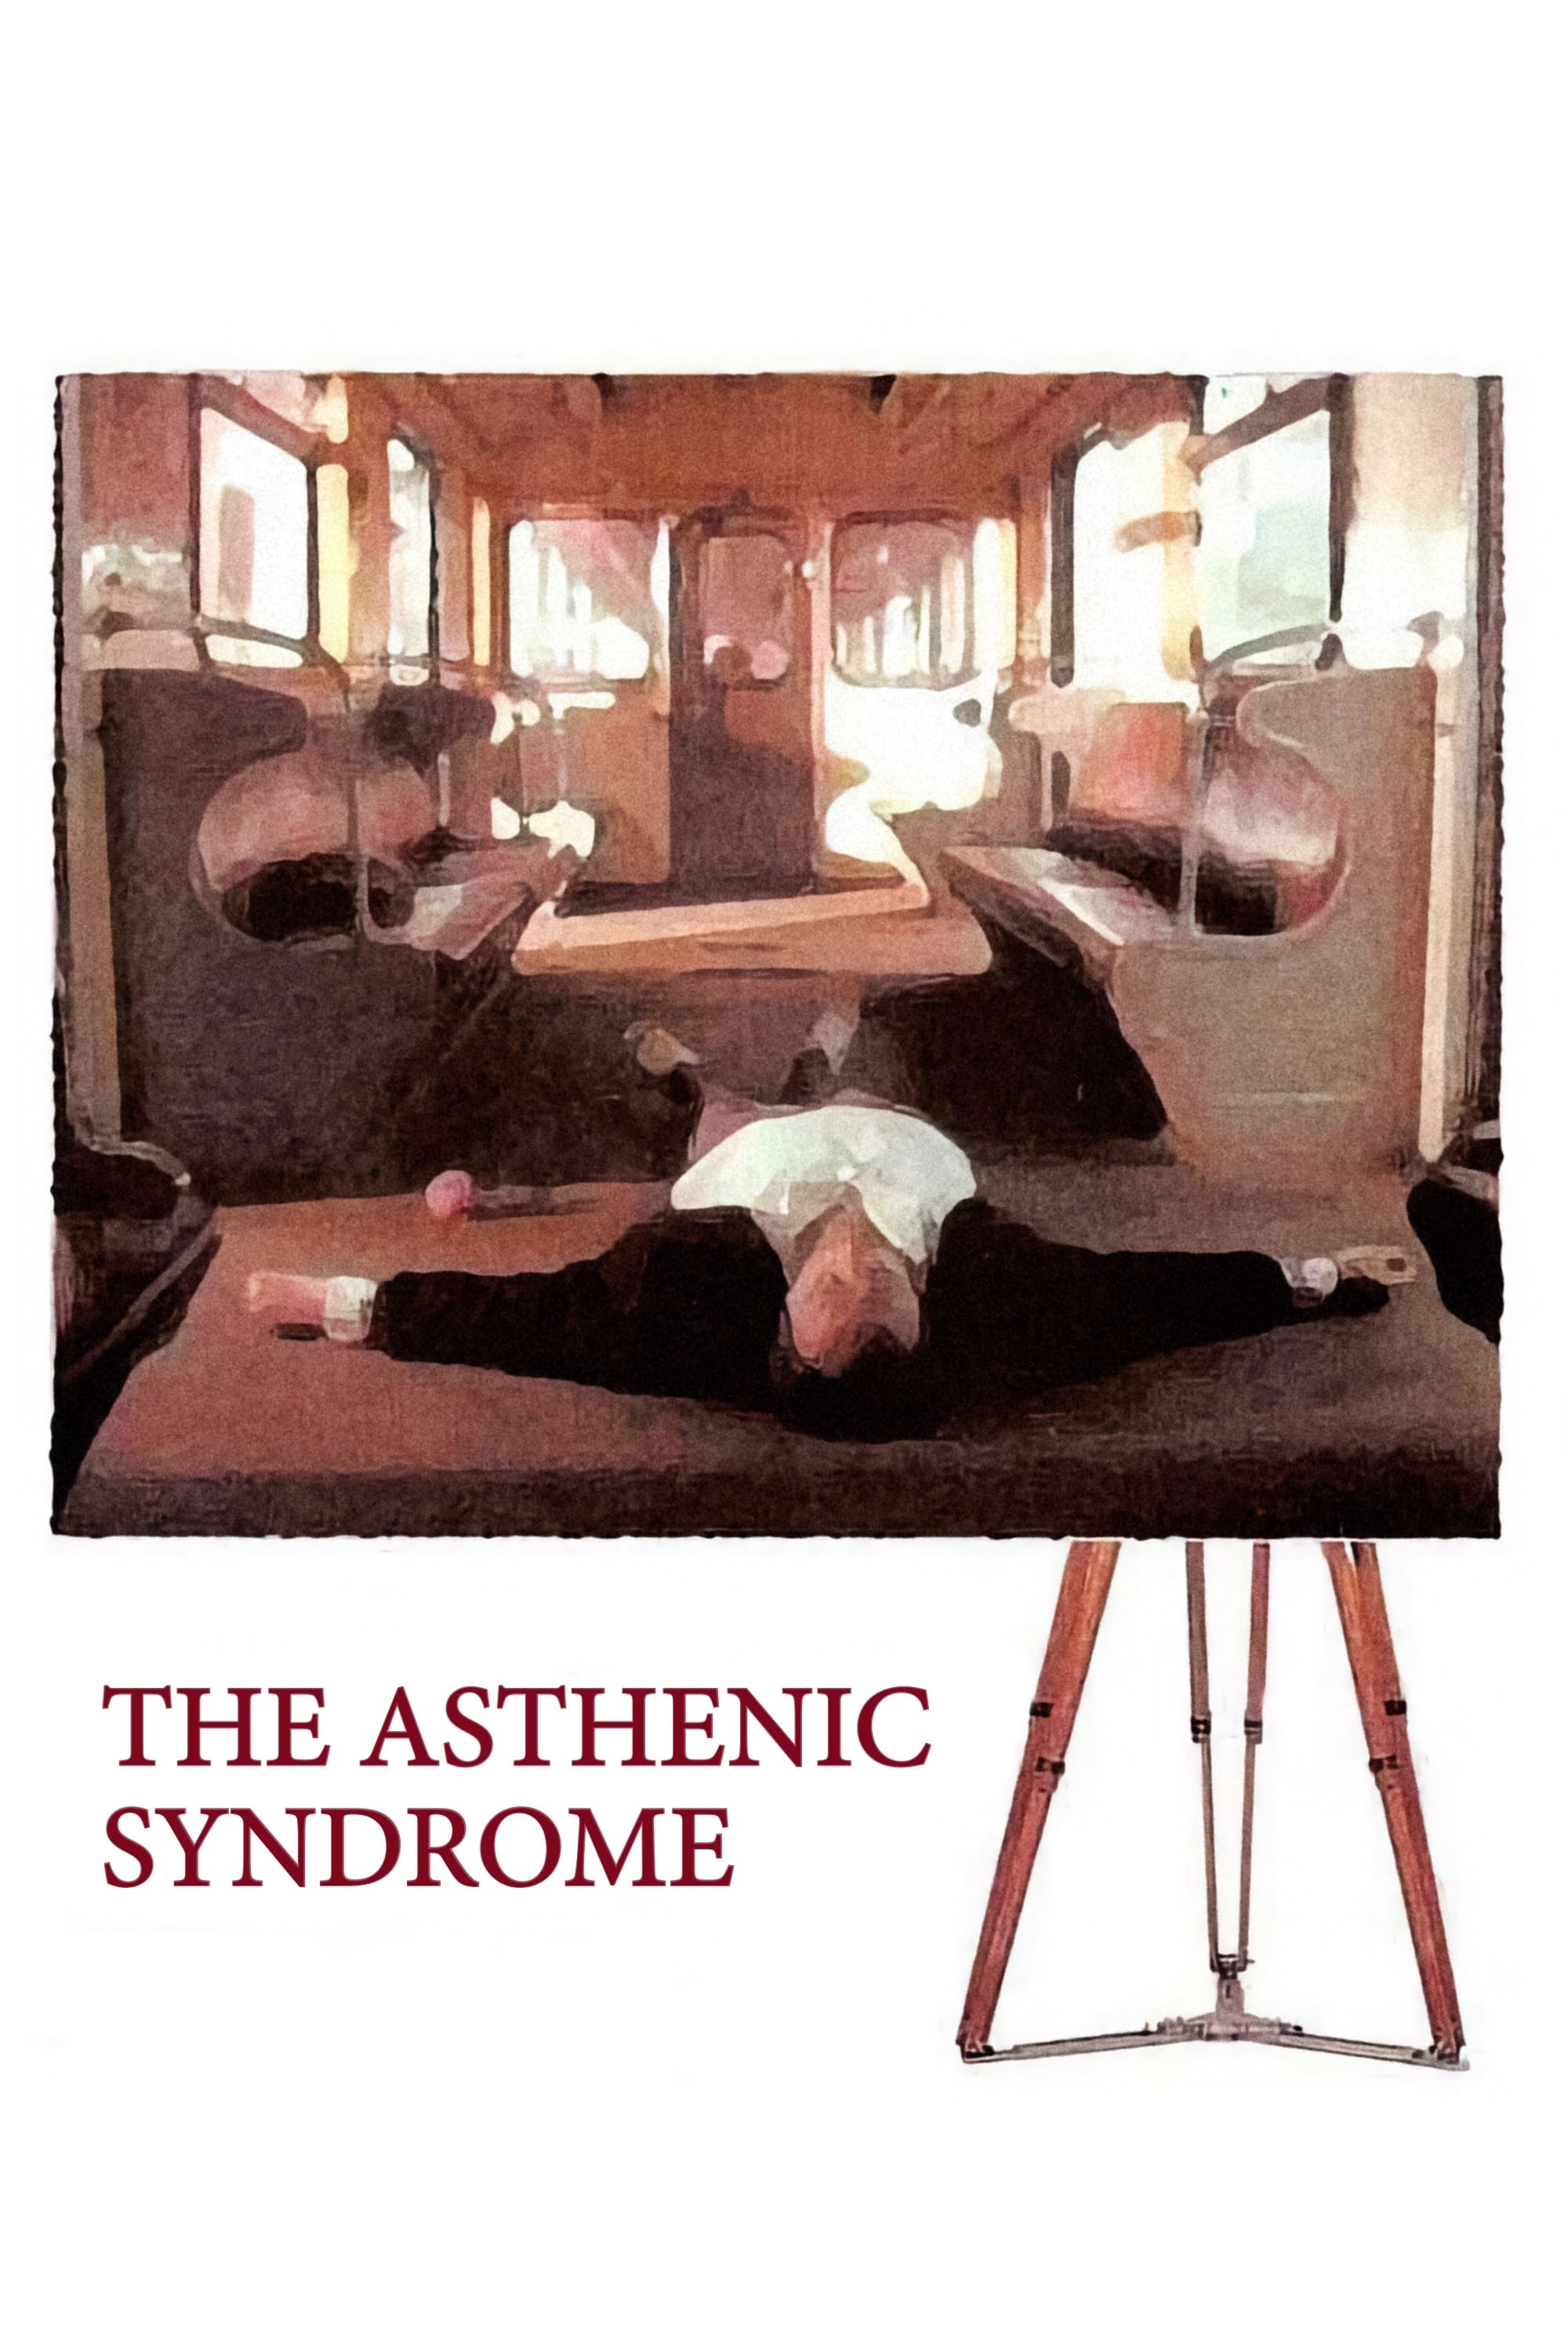 El síndrome asténico